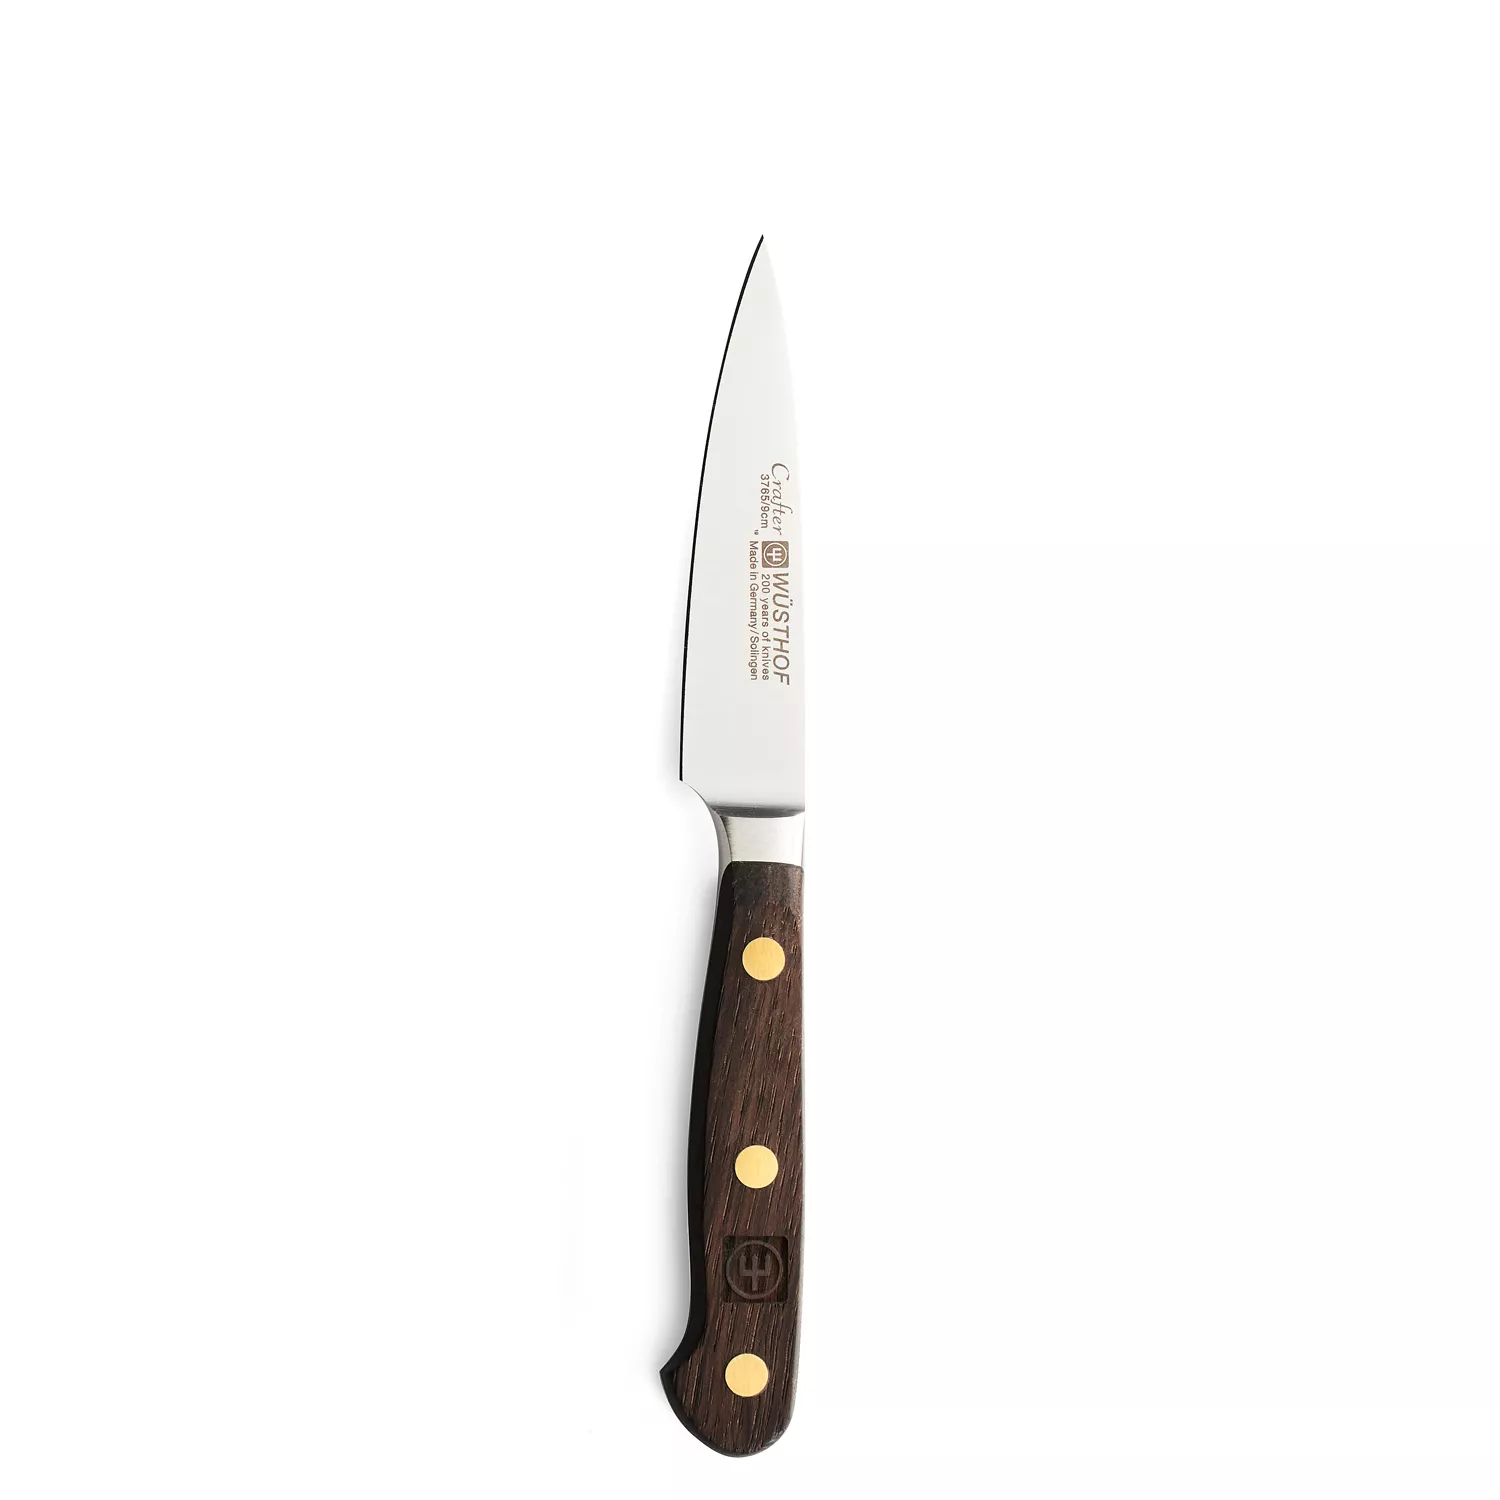 Wüsthof Crafter Paring Knife, 3.5"